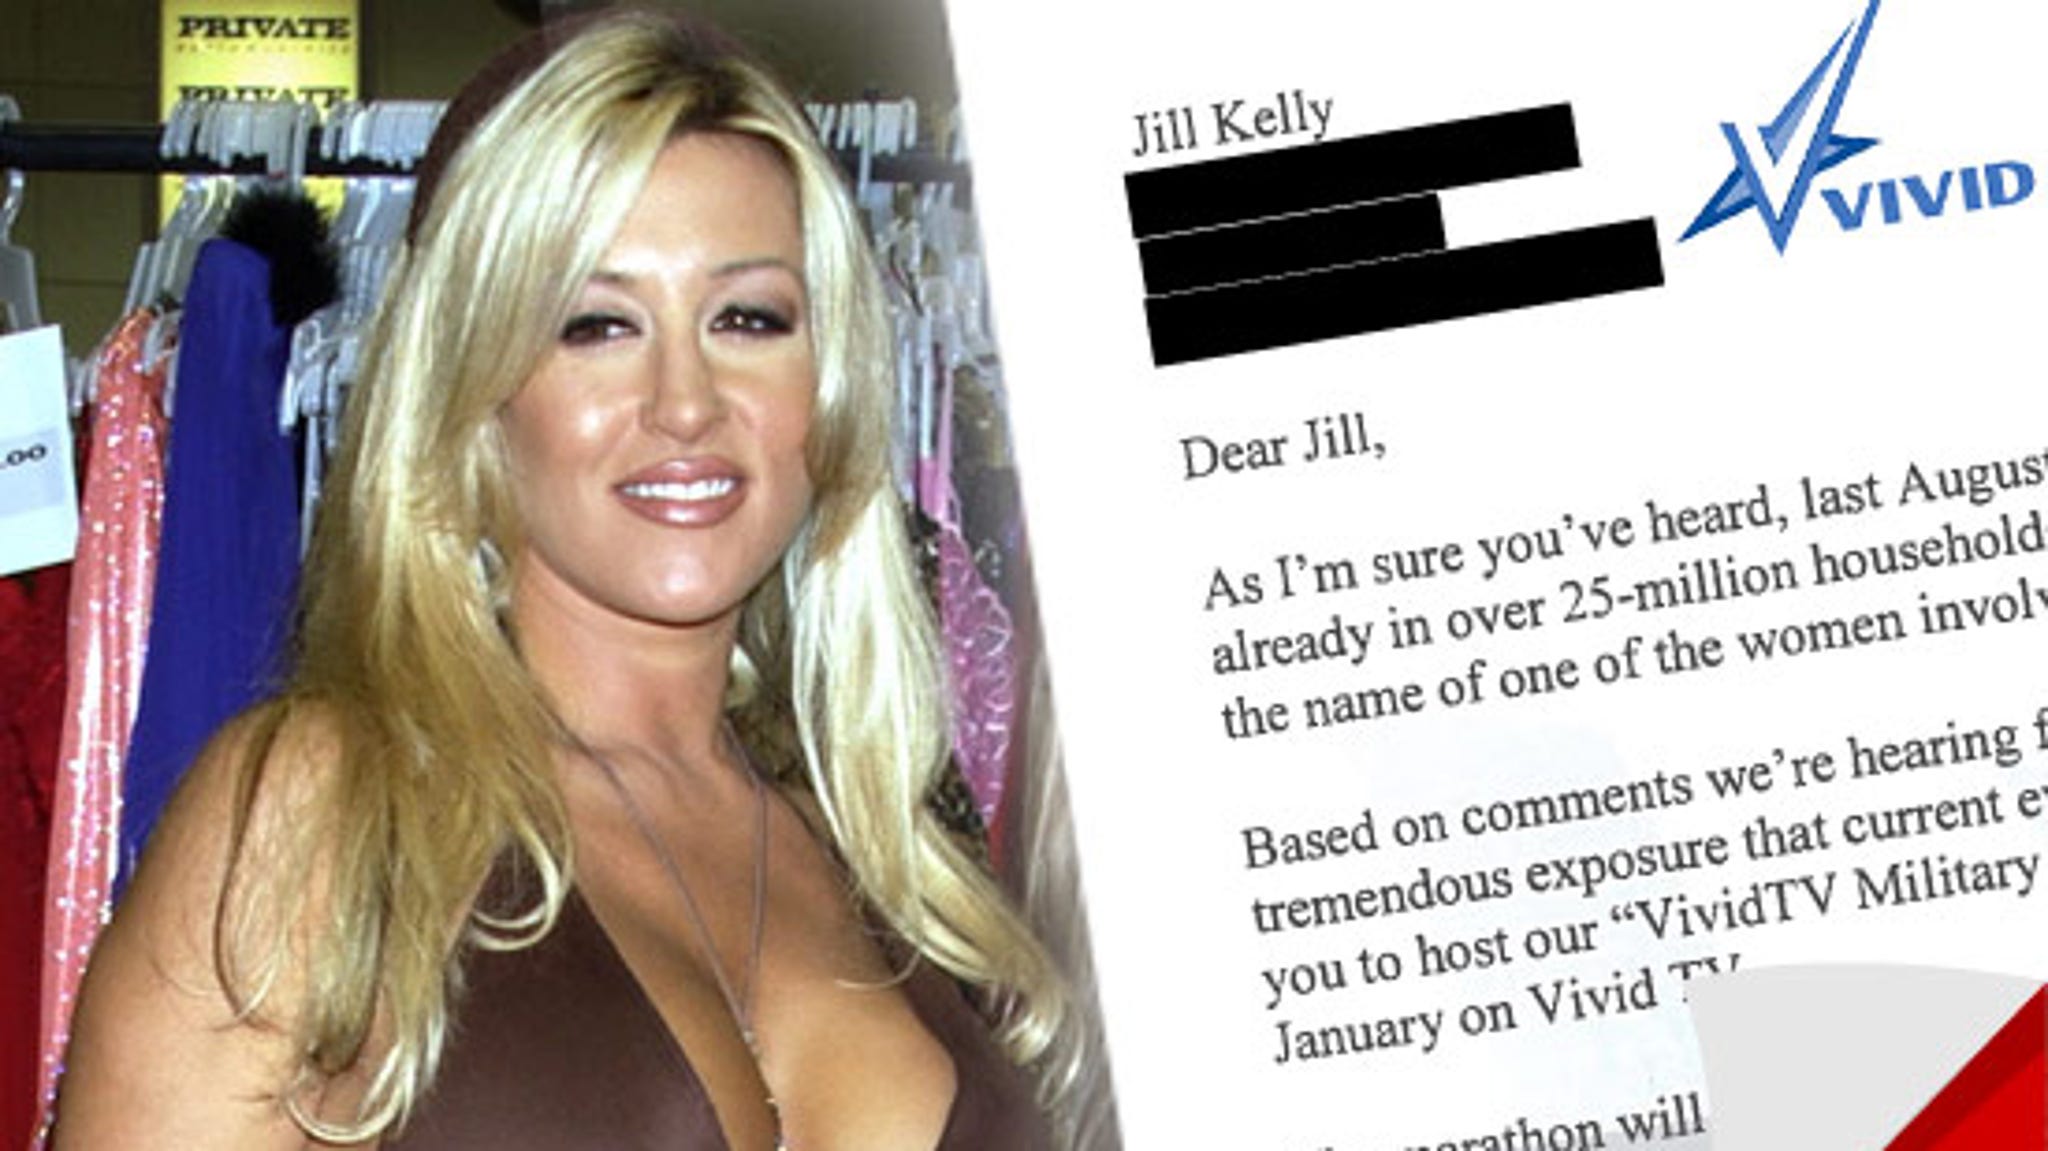 Vivid Porn Star Women - Porn Star Jill Kelly -- General Petraeus Sex Scandal Got Me a Job Offer!